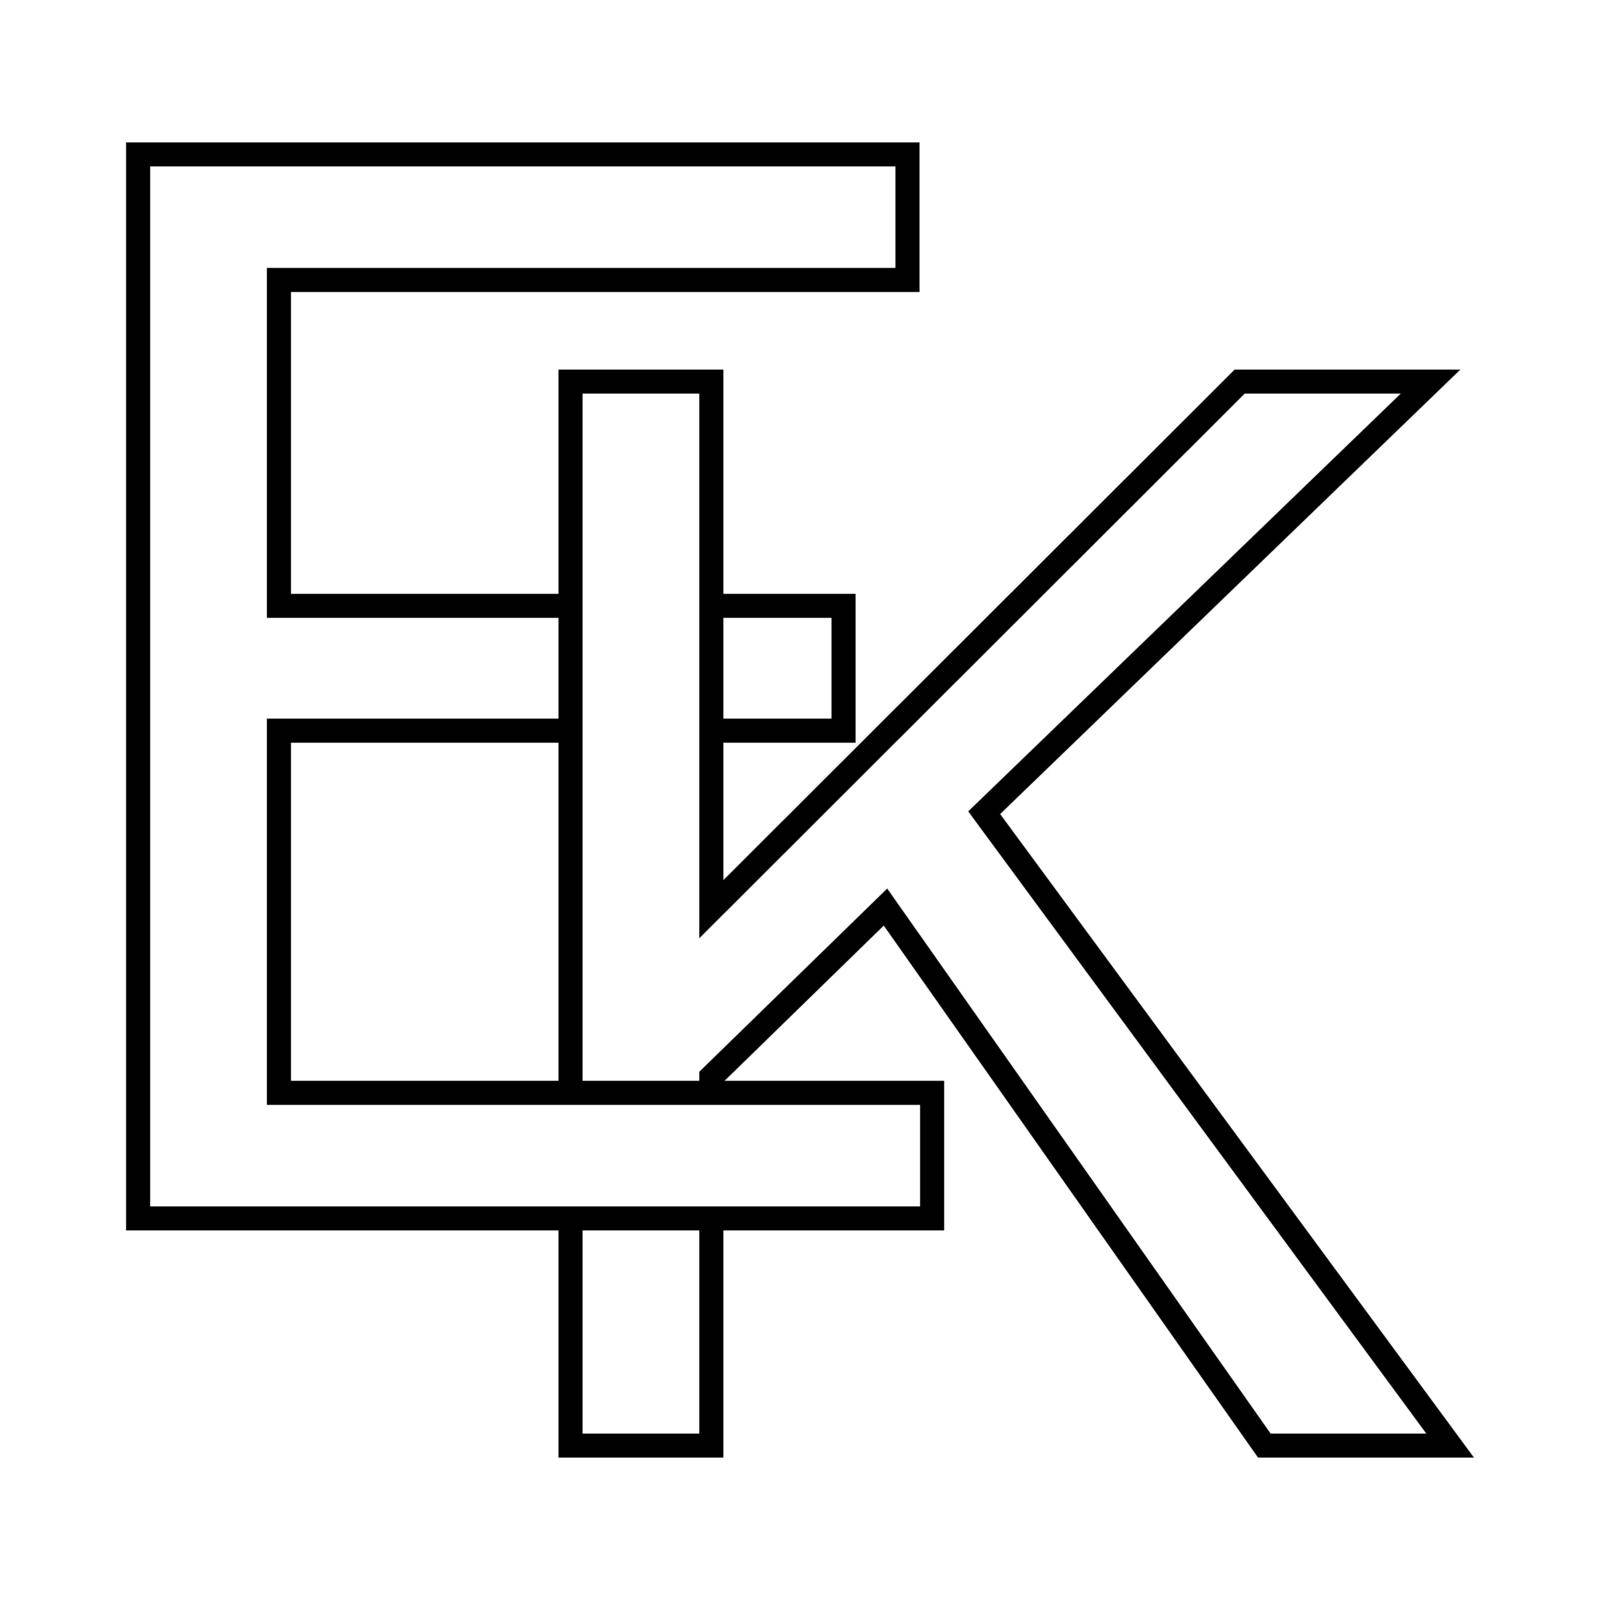 Logo sign ek ke icon nft ek interlaced, letters e k